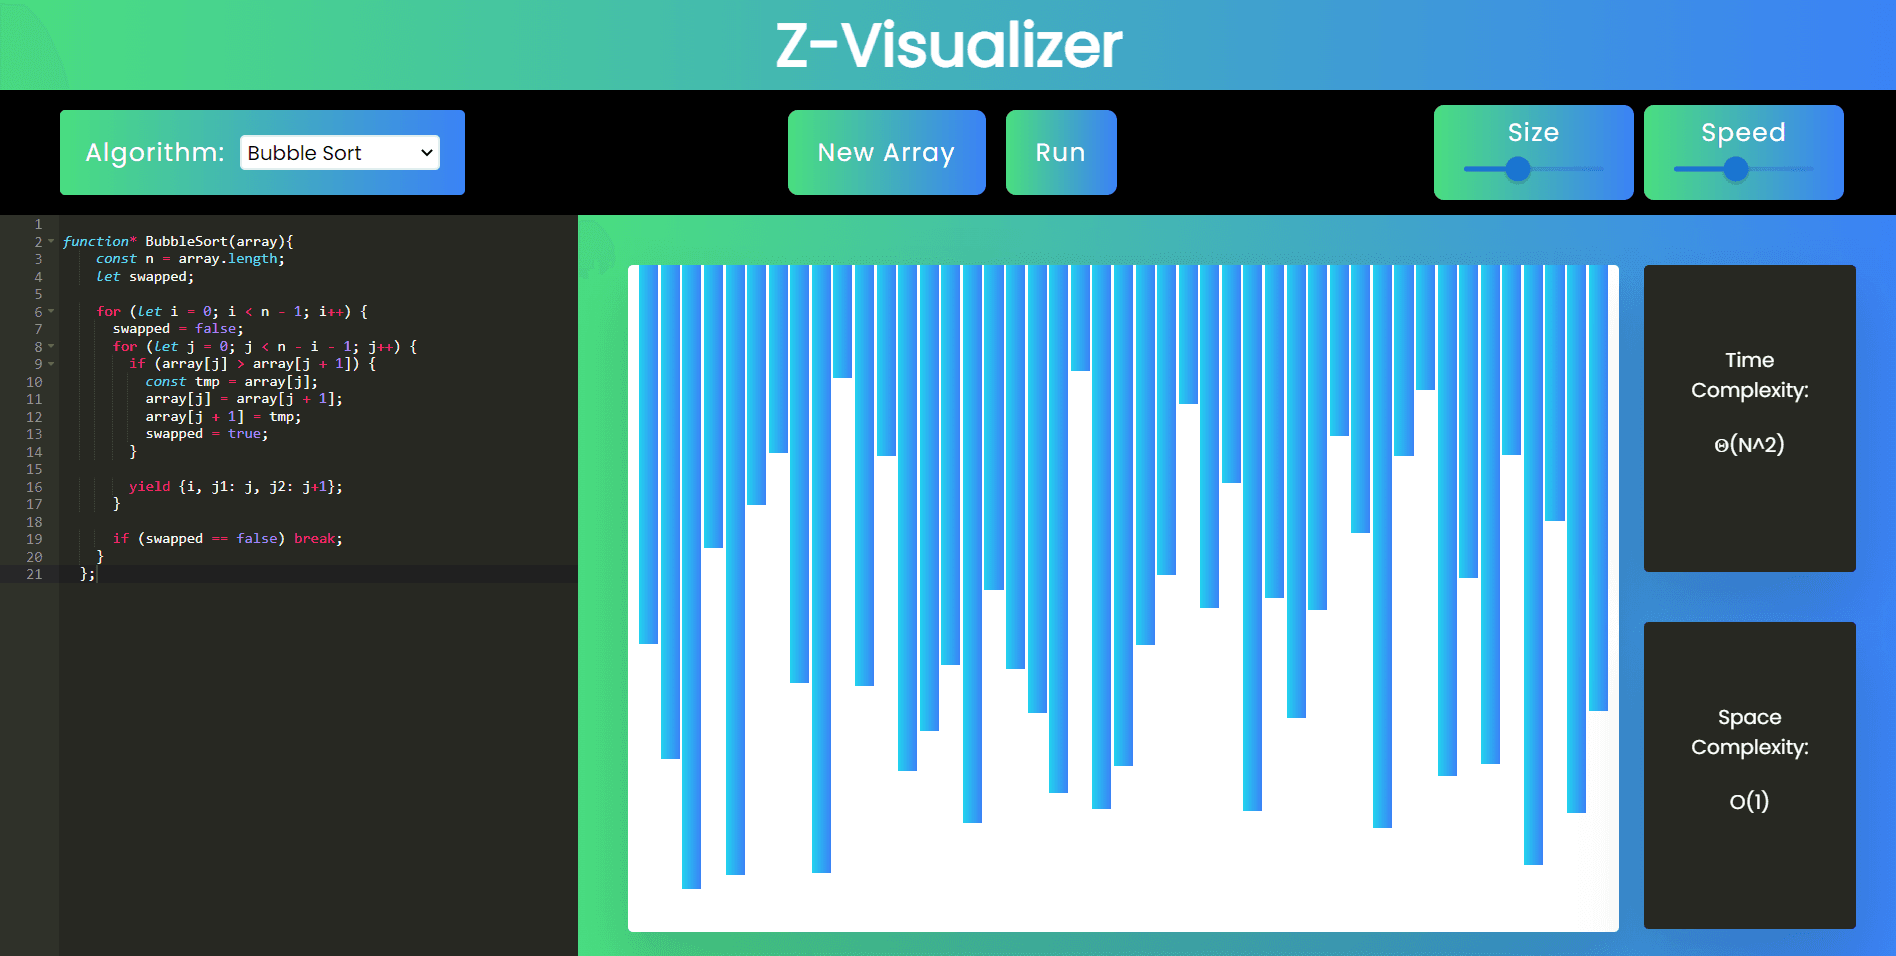 Z-Visualizer